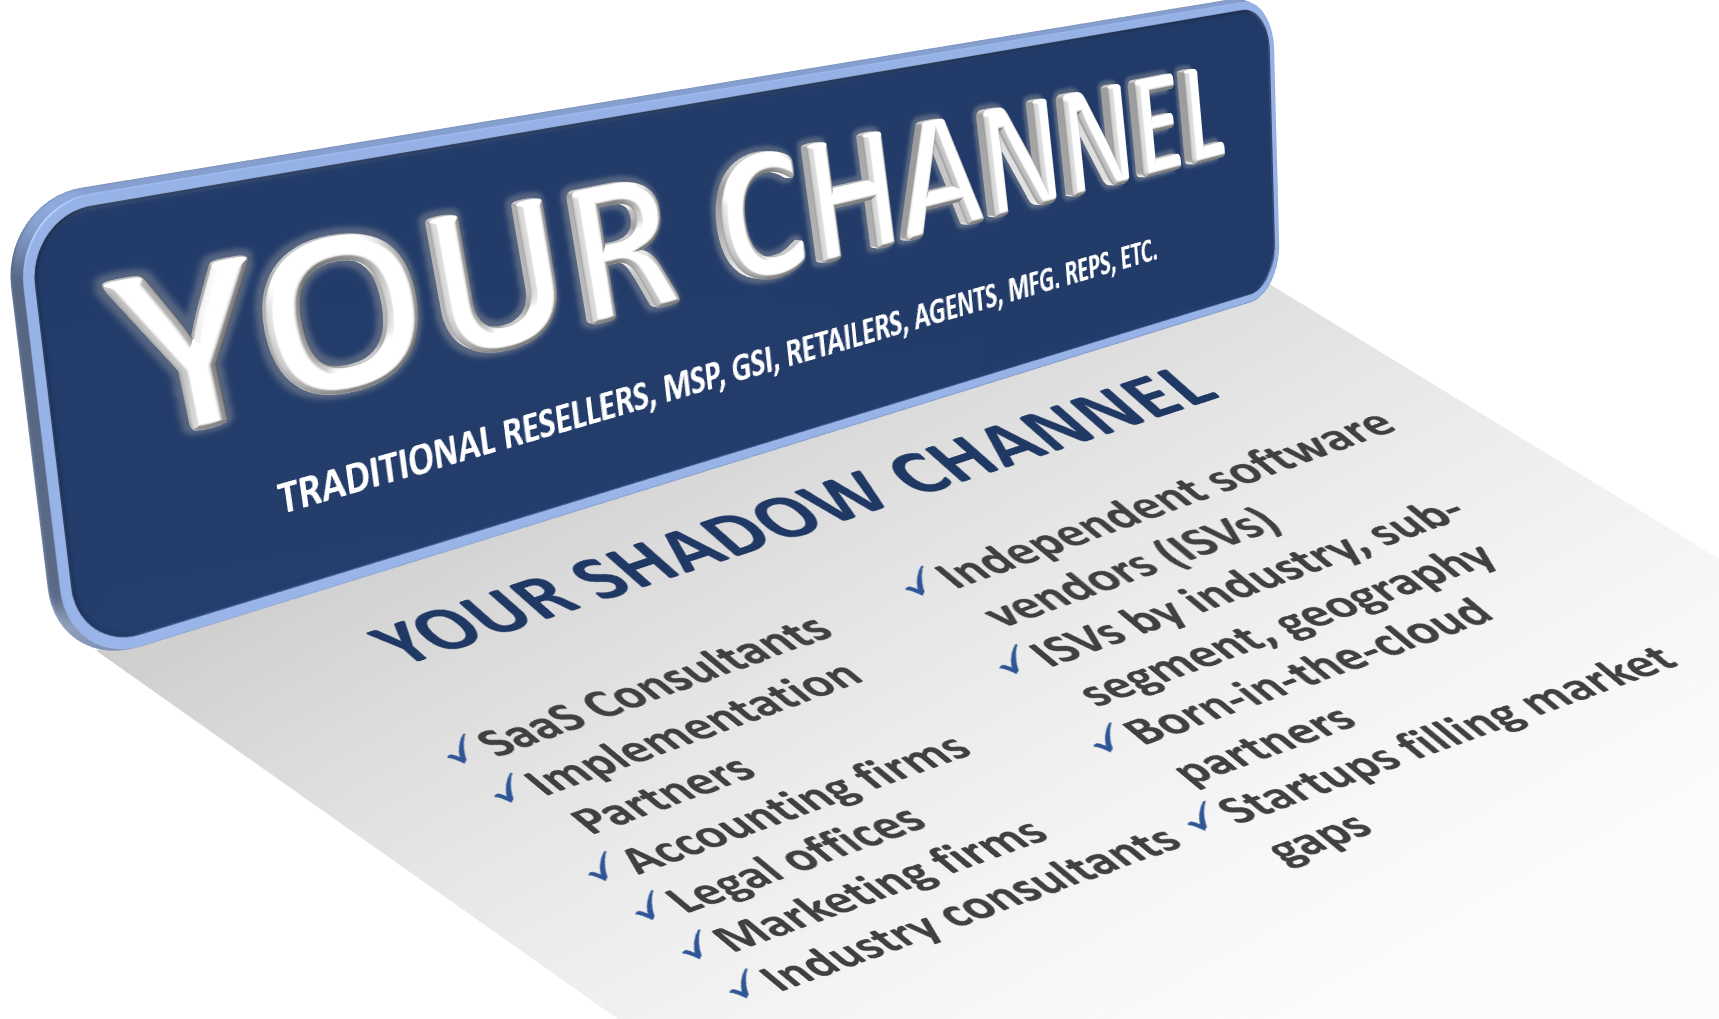 Shadow Channel Checklist